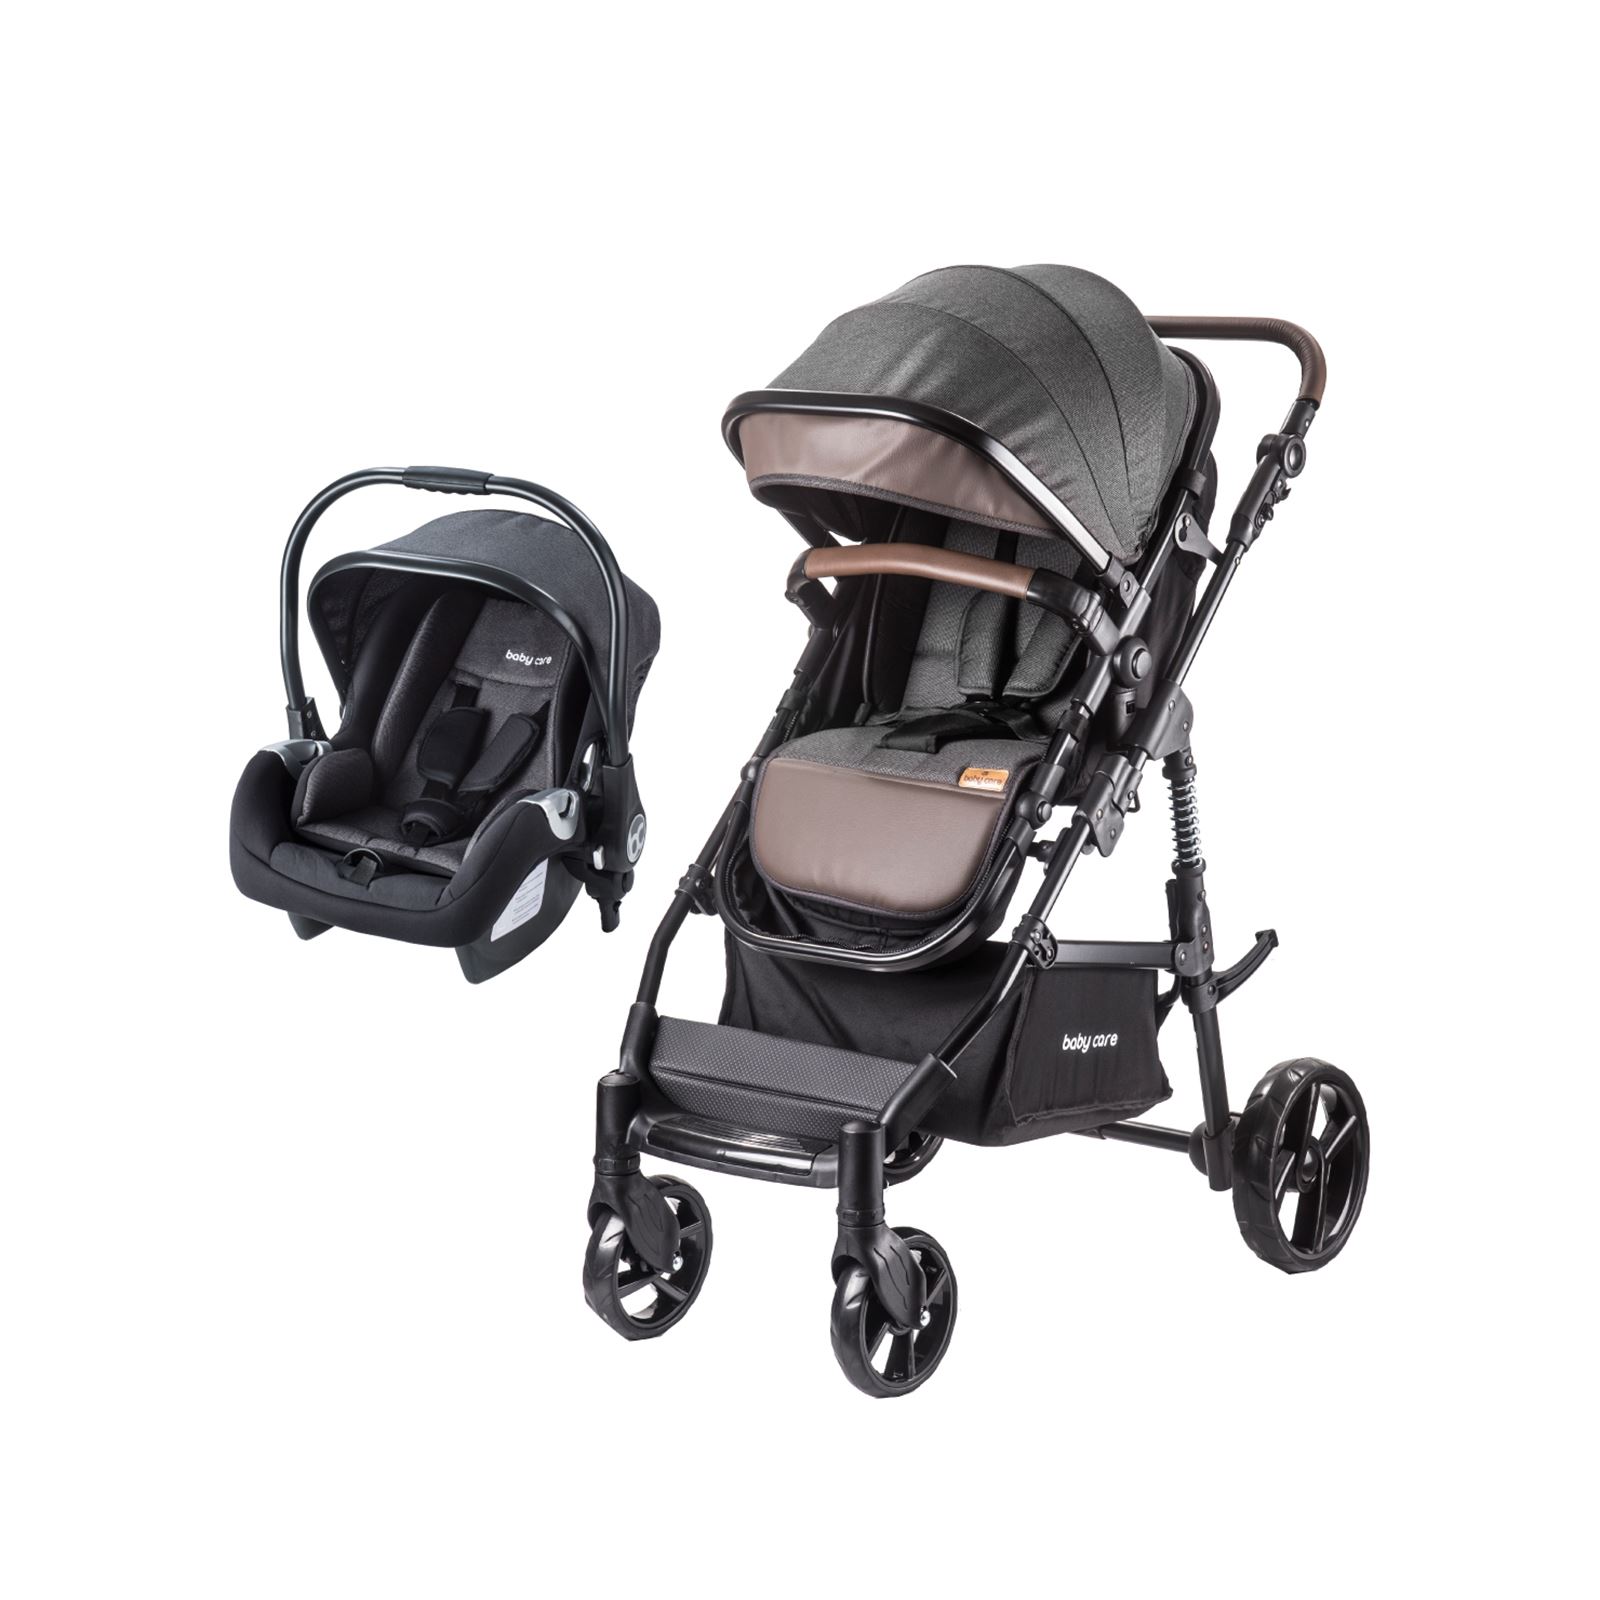 Babycare Bora Cross Travel Sistem Bebek Arabası Siyah-Kahve